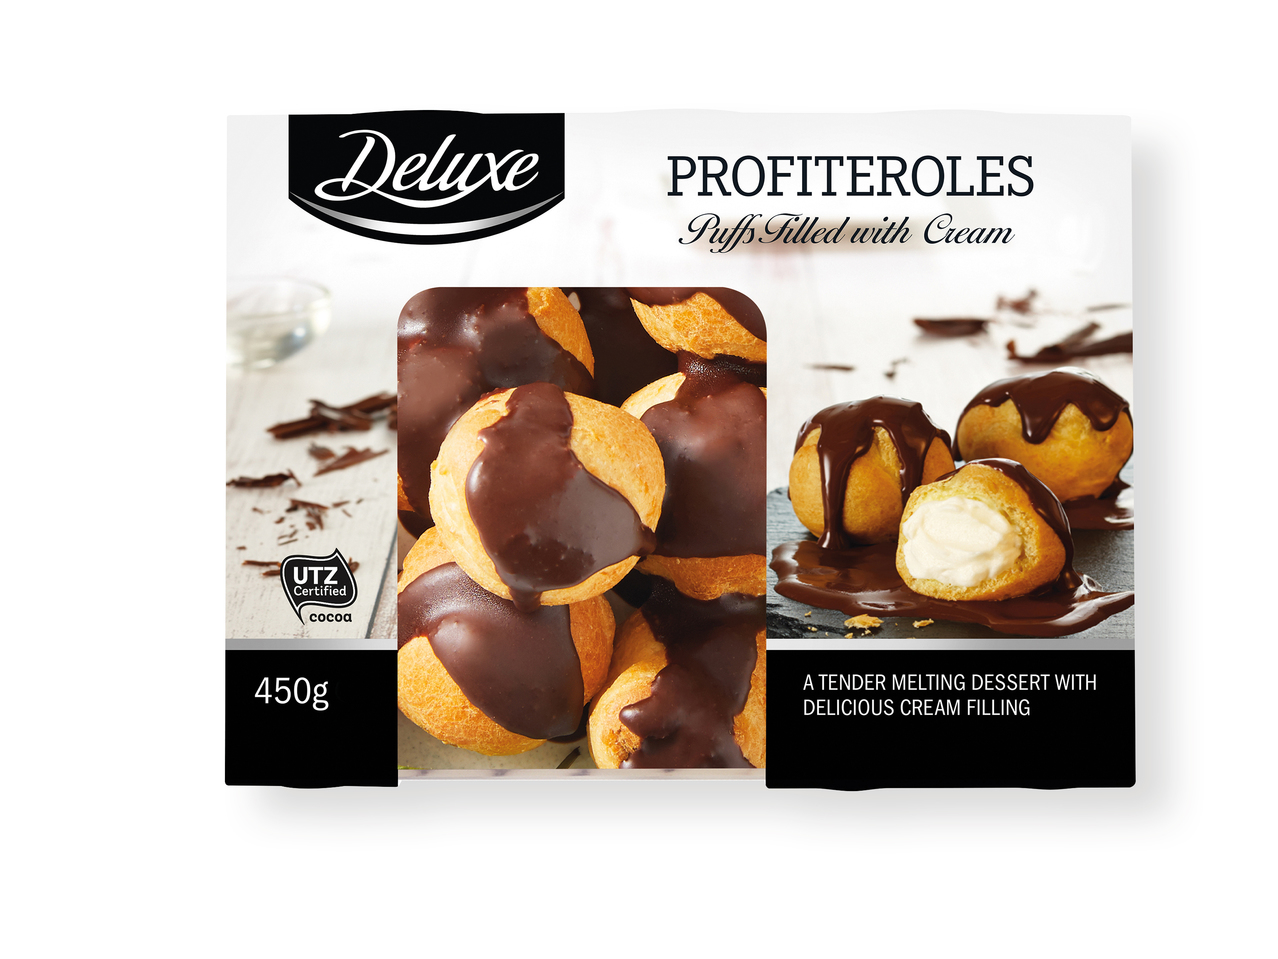 'Deluxe(R)' Profiteroles con chocolate